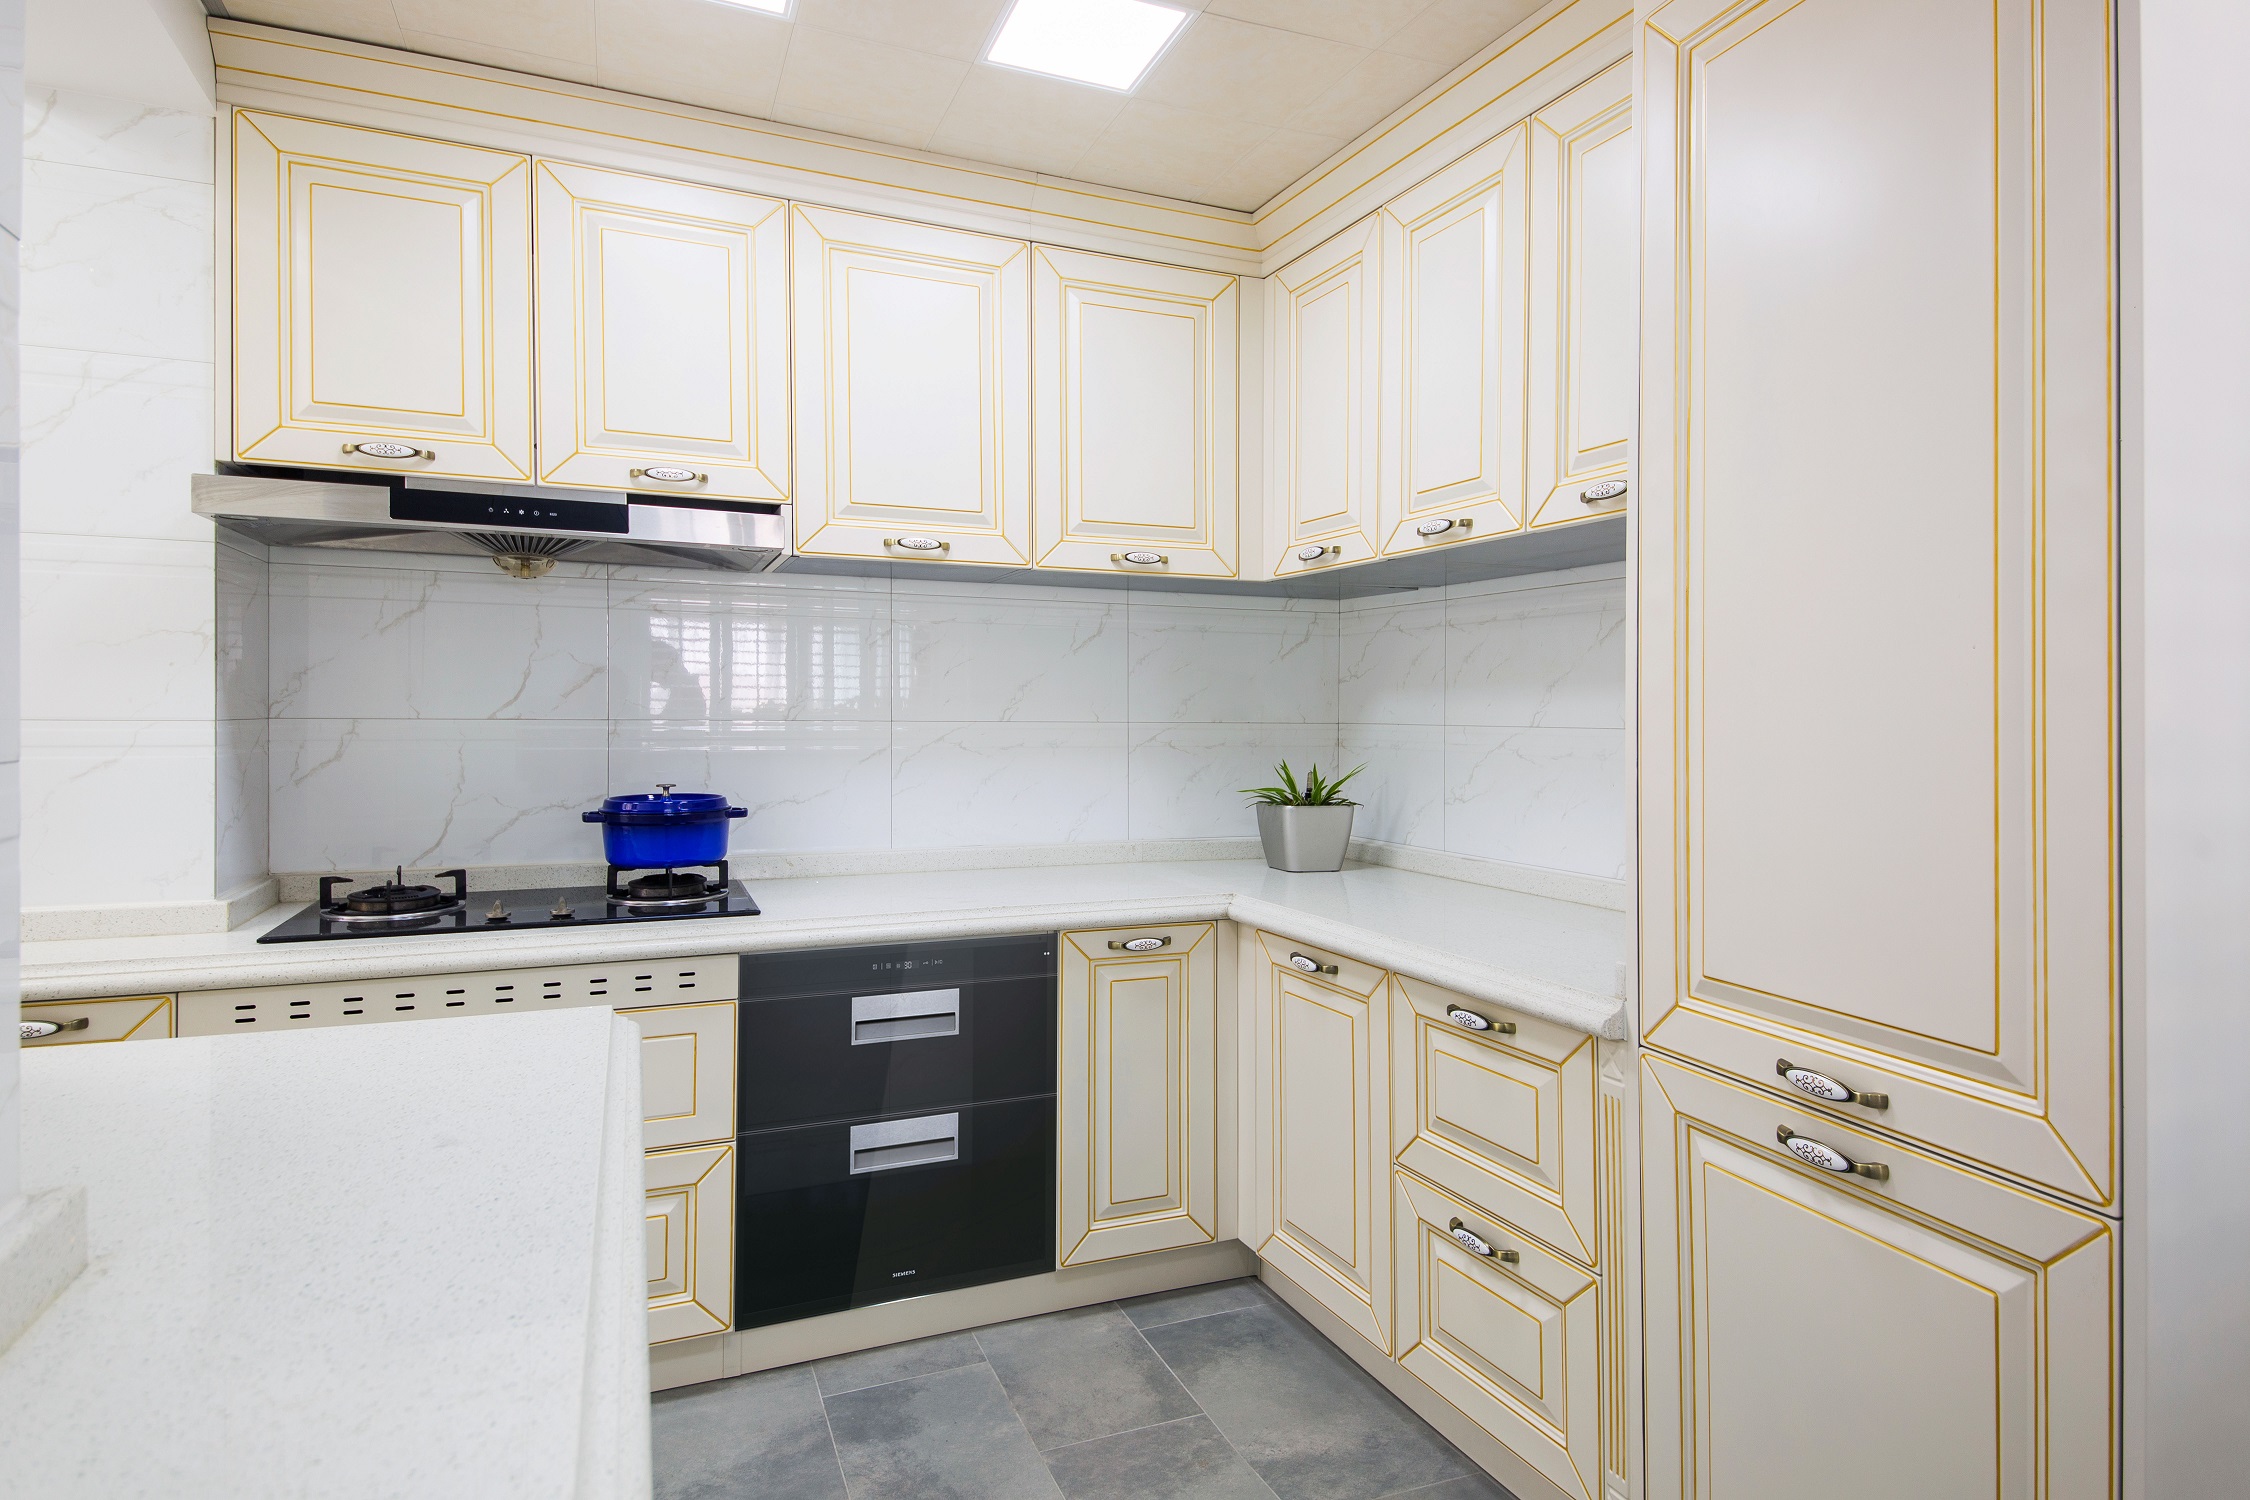 镶金边造型的橱柜呼应整体华美舒适的家居气氛